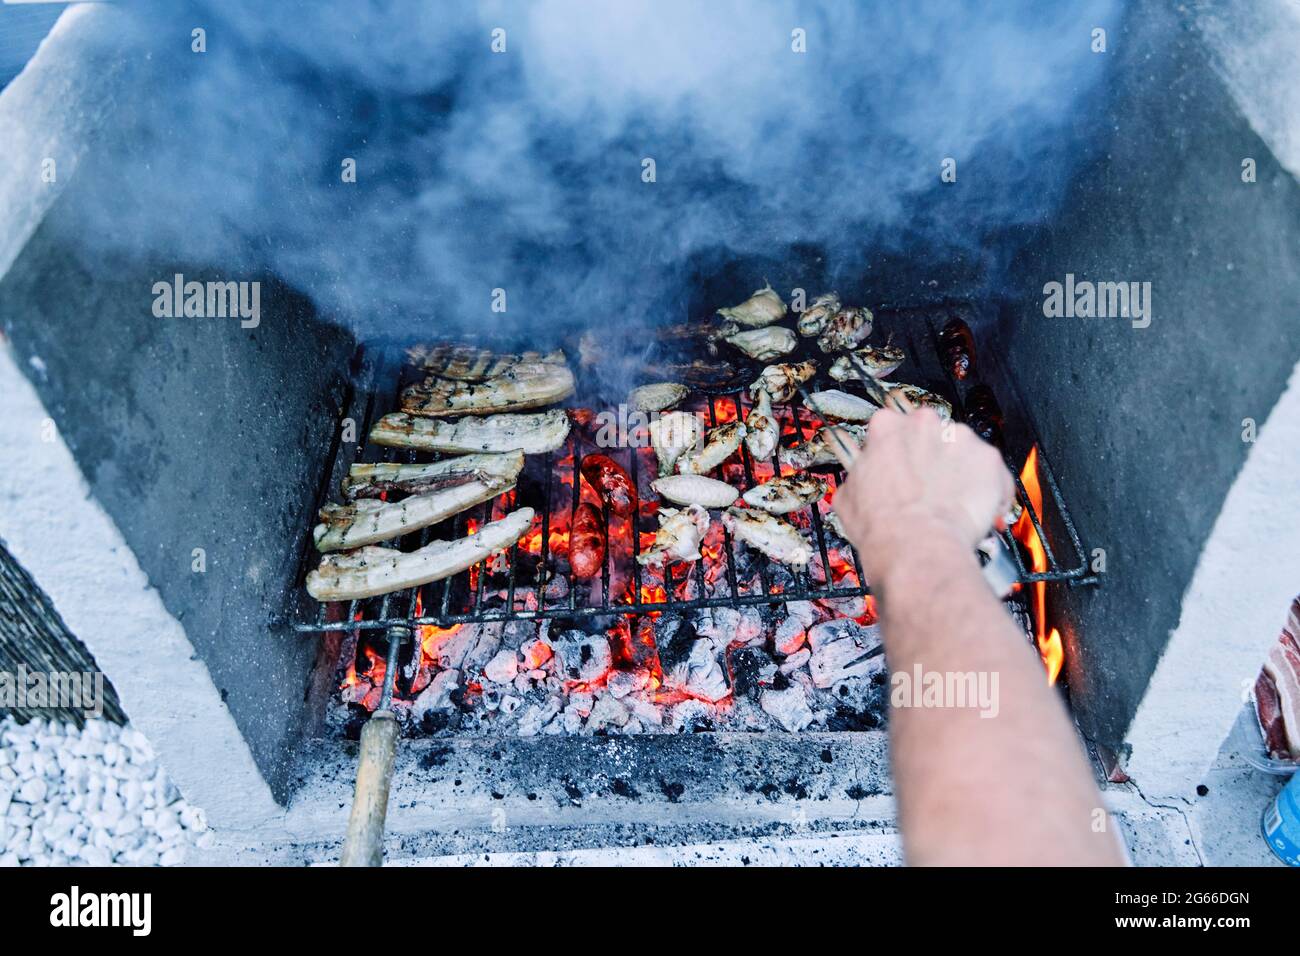 Detalle de la mano de un hombre con pinzas que se convierte en deliciosa carne a la parrilla sobre los carbones de una barbacoa. Preparar la cena al aire libre. Foto de stock